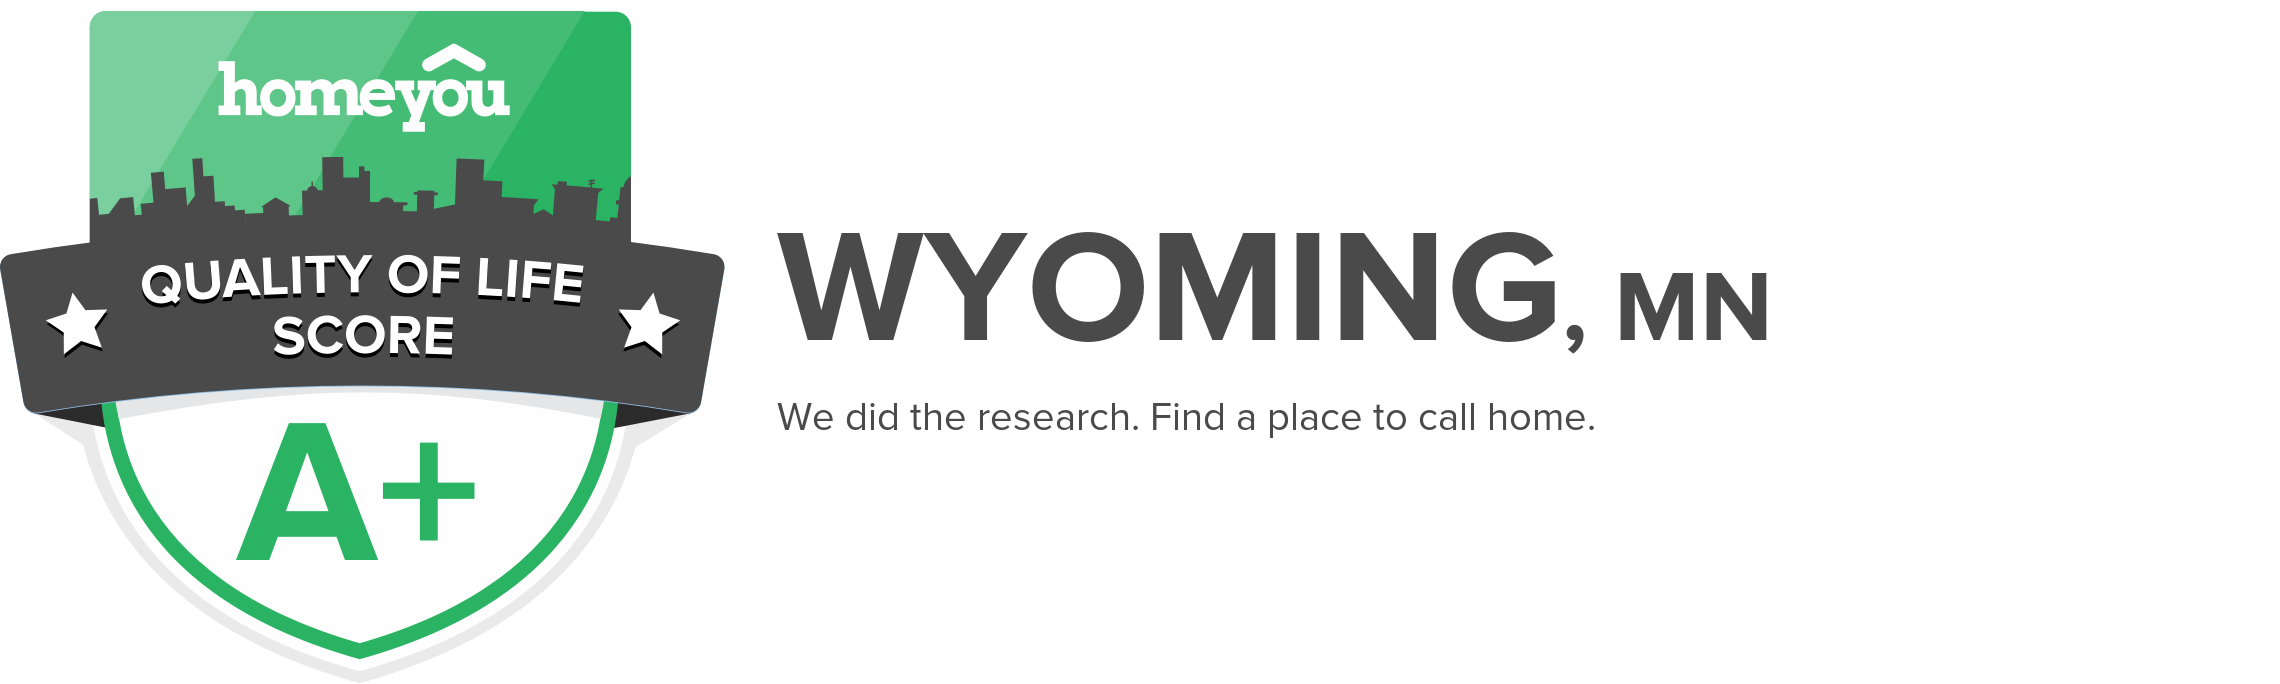 Wyoming, MN